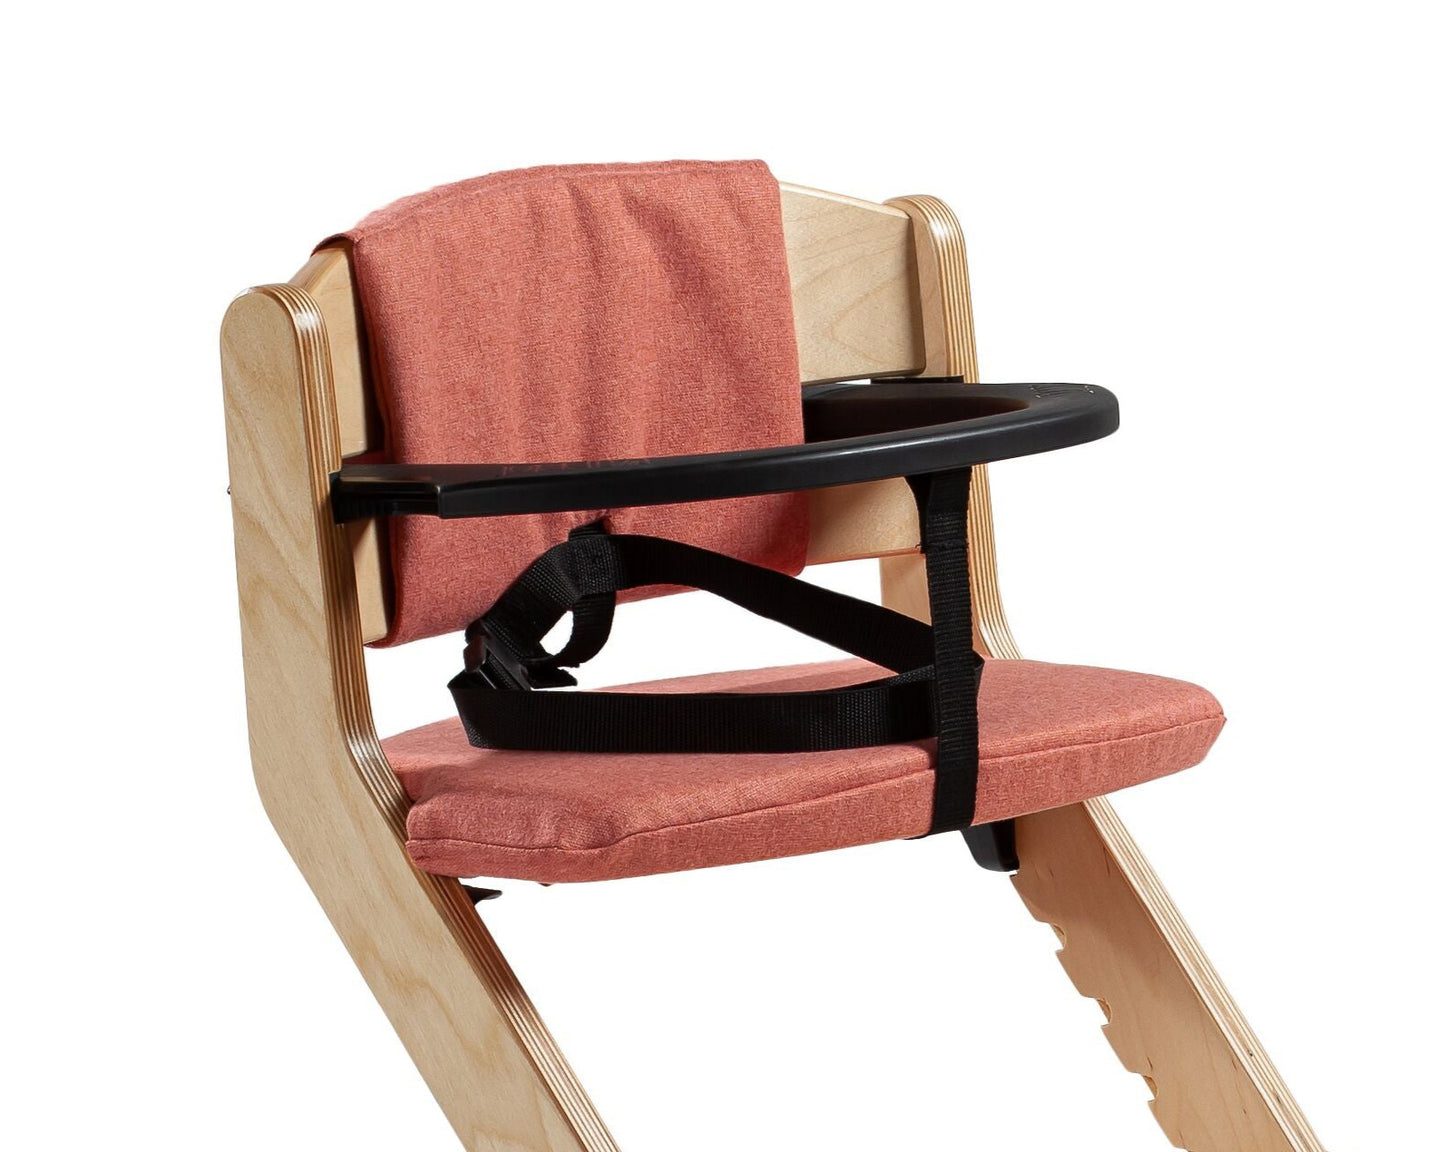 Kiddo - Комплект подушек на стульчик для кормления